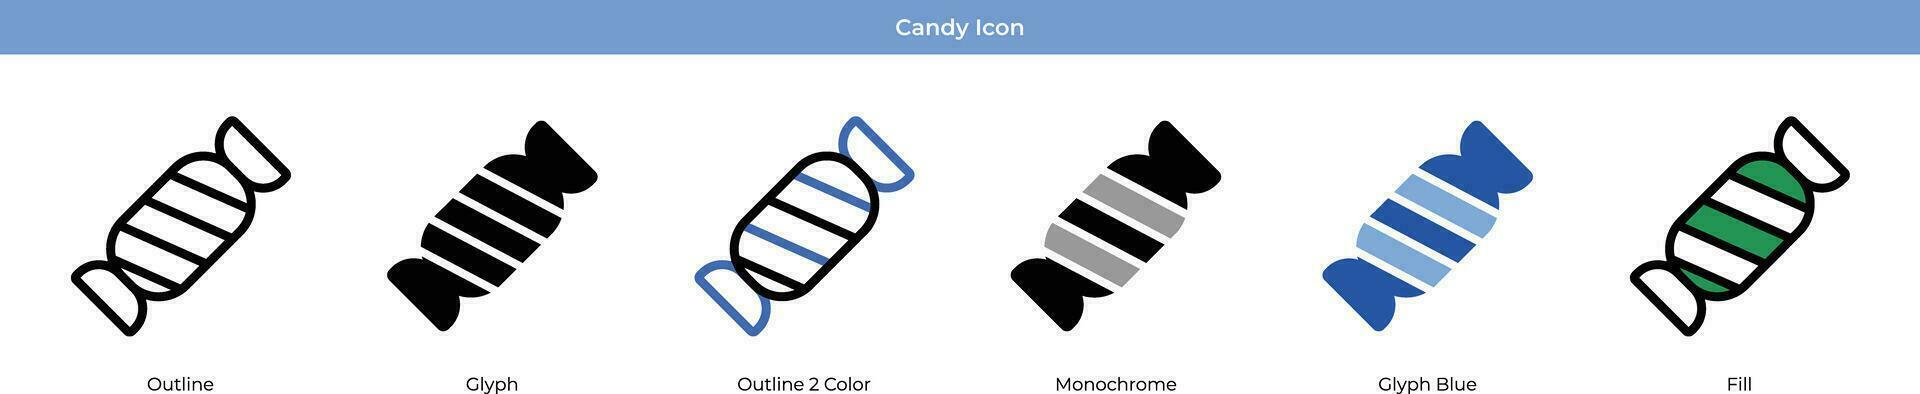 Süßigkeiten-Icon-Set vektor